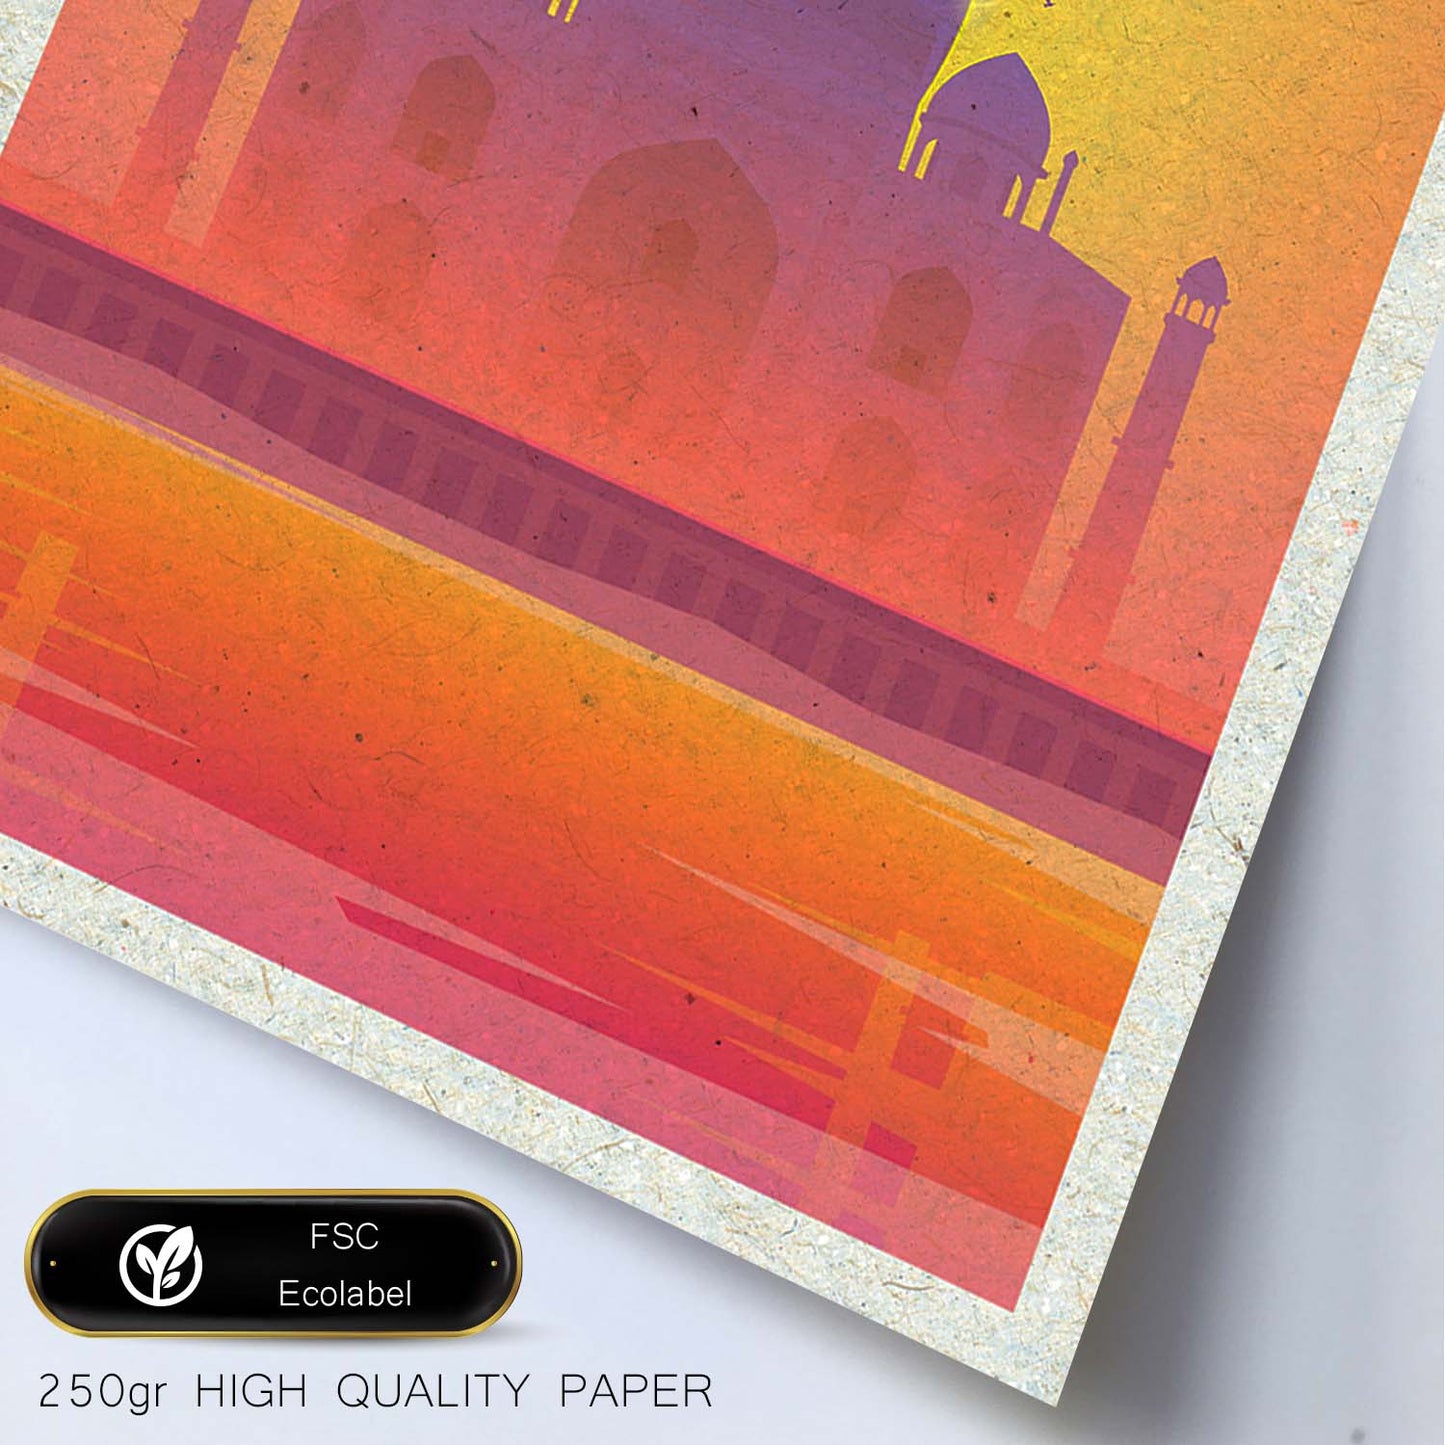 Lámina de India. Estilo vintage. Poster del Taj Mahal en colores. Anuncio India-Artwork-Nacnic-Nacnic Estudio SL